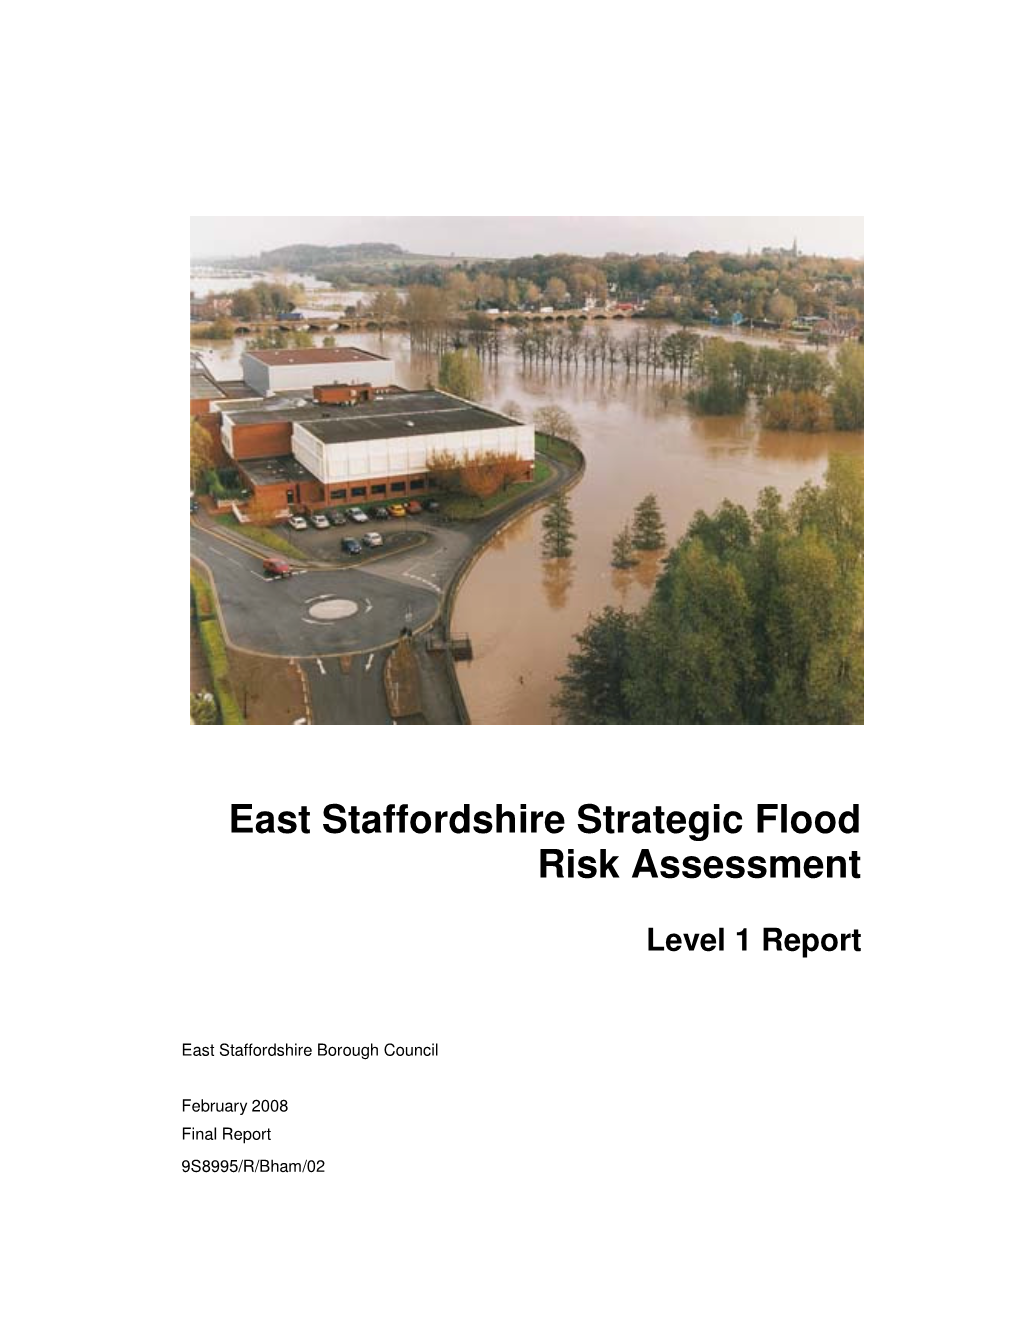 East Staffordshire Strategic Flood Risk Assessment